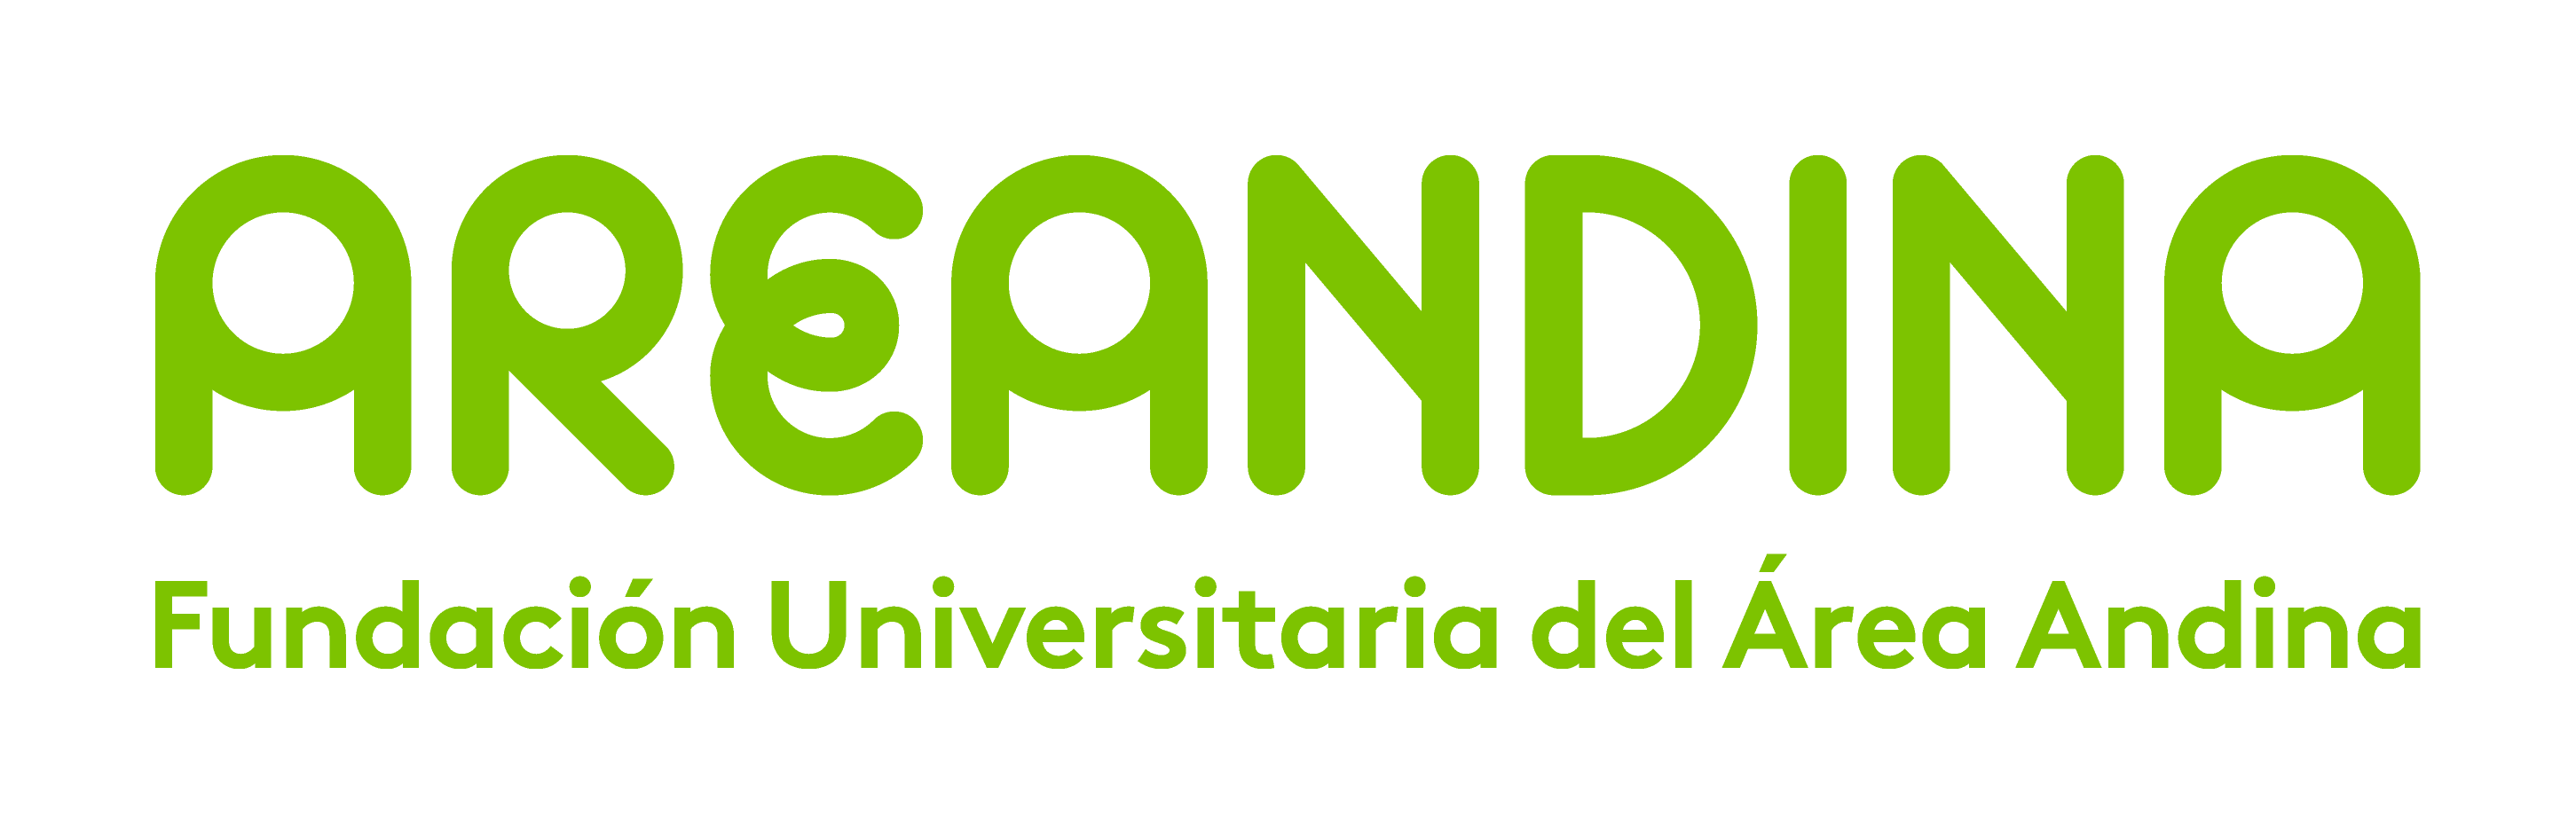 Logosímbolo de la Fundación Universitaria del Área Andina